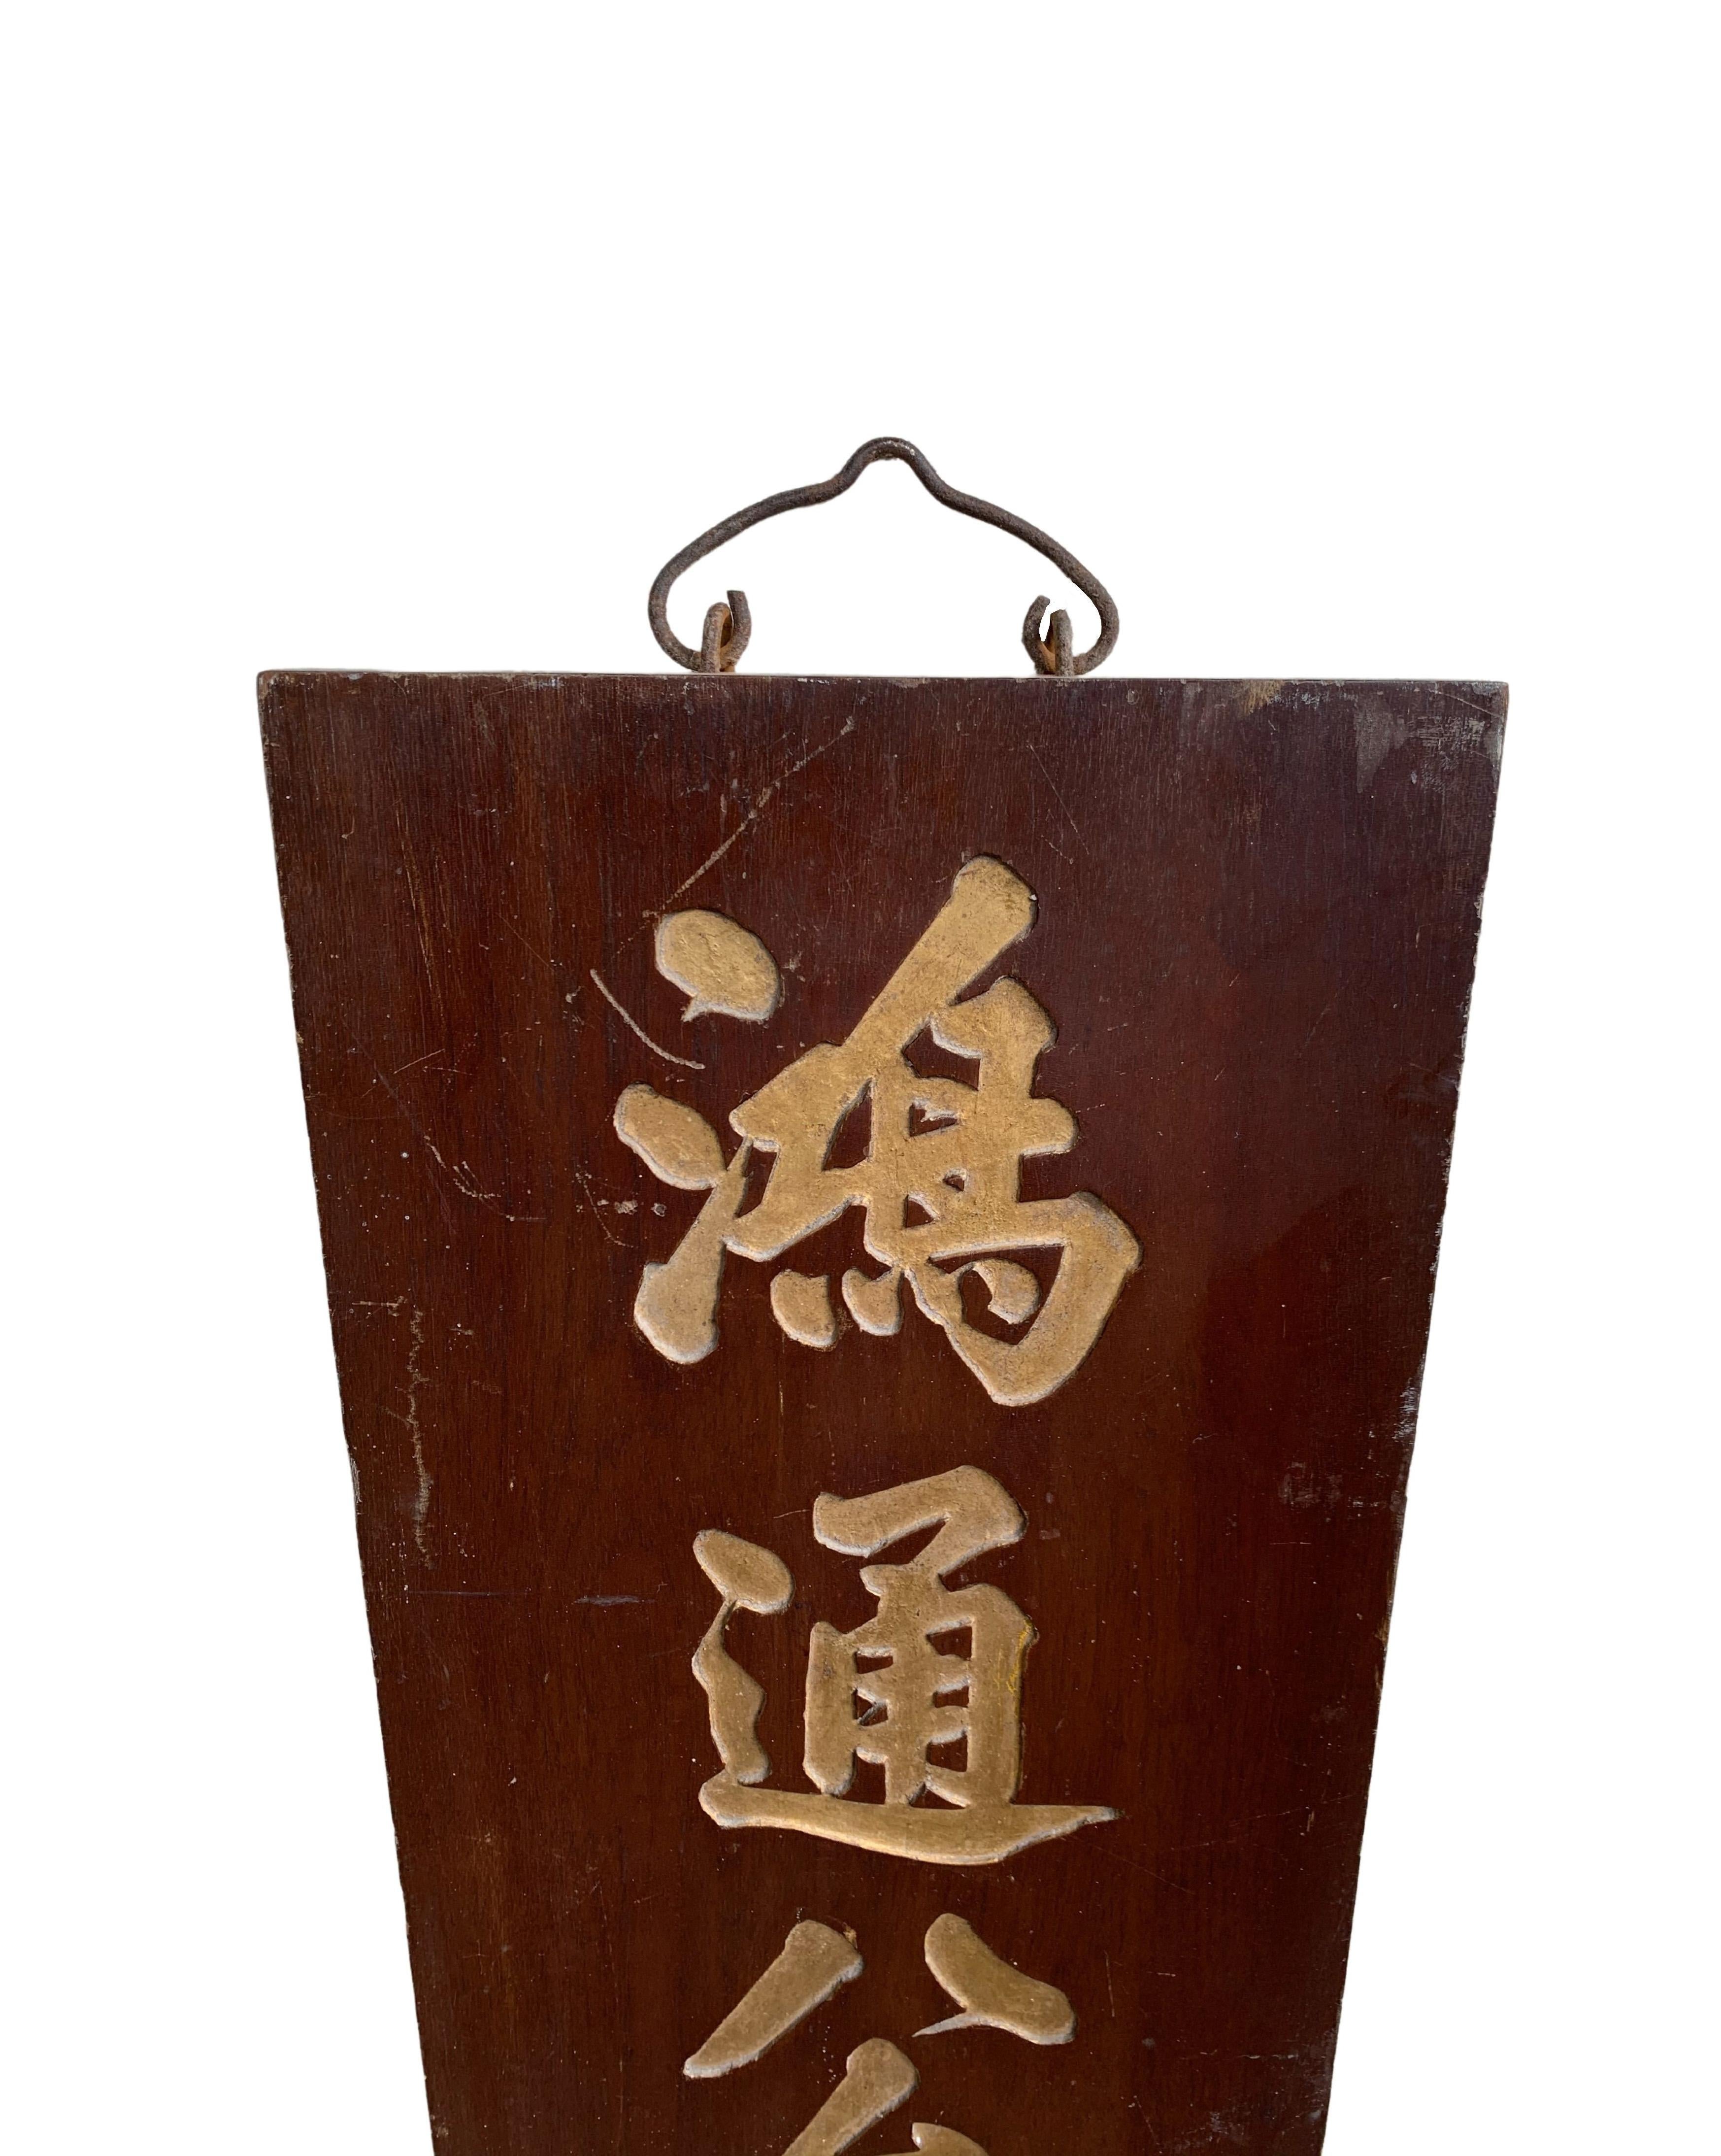 Mit einem holzfarbenen Sockel hebt dieses Schild (das komplett aus Holz gefertigt ist) 3 große goldfarbene chinesische Schriftzeichen hervor. Das Schild stammt aus der Mitte des 20. Jahrhunderts und ist durch die Alterung des Holzes und das